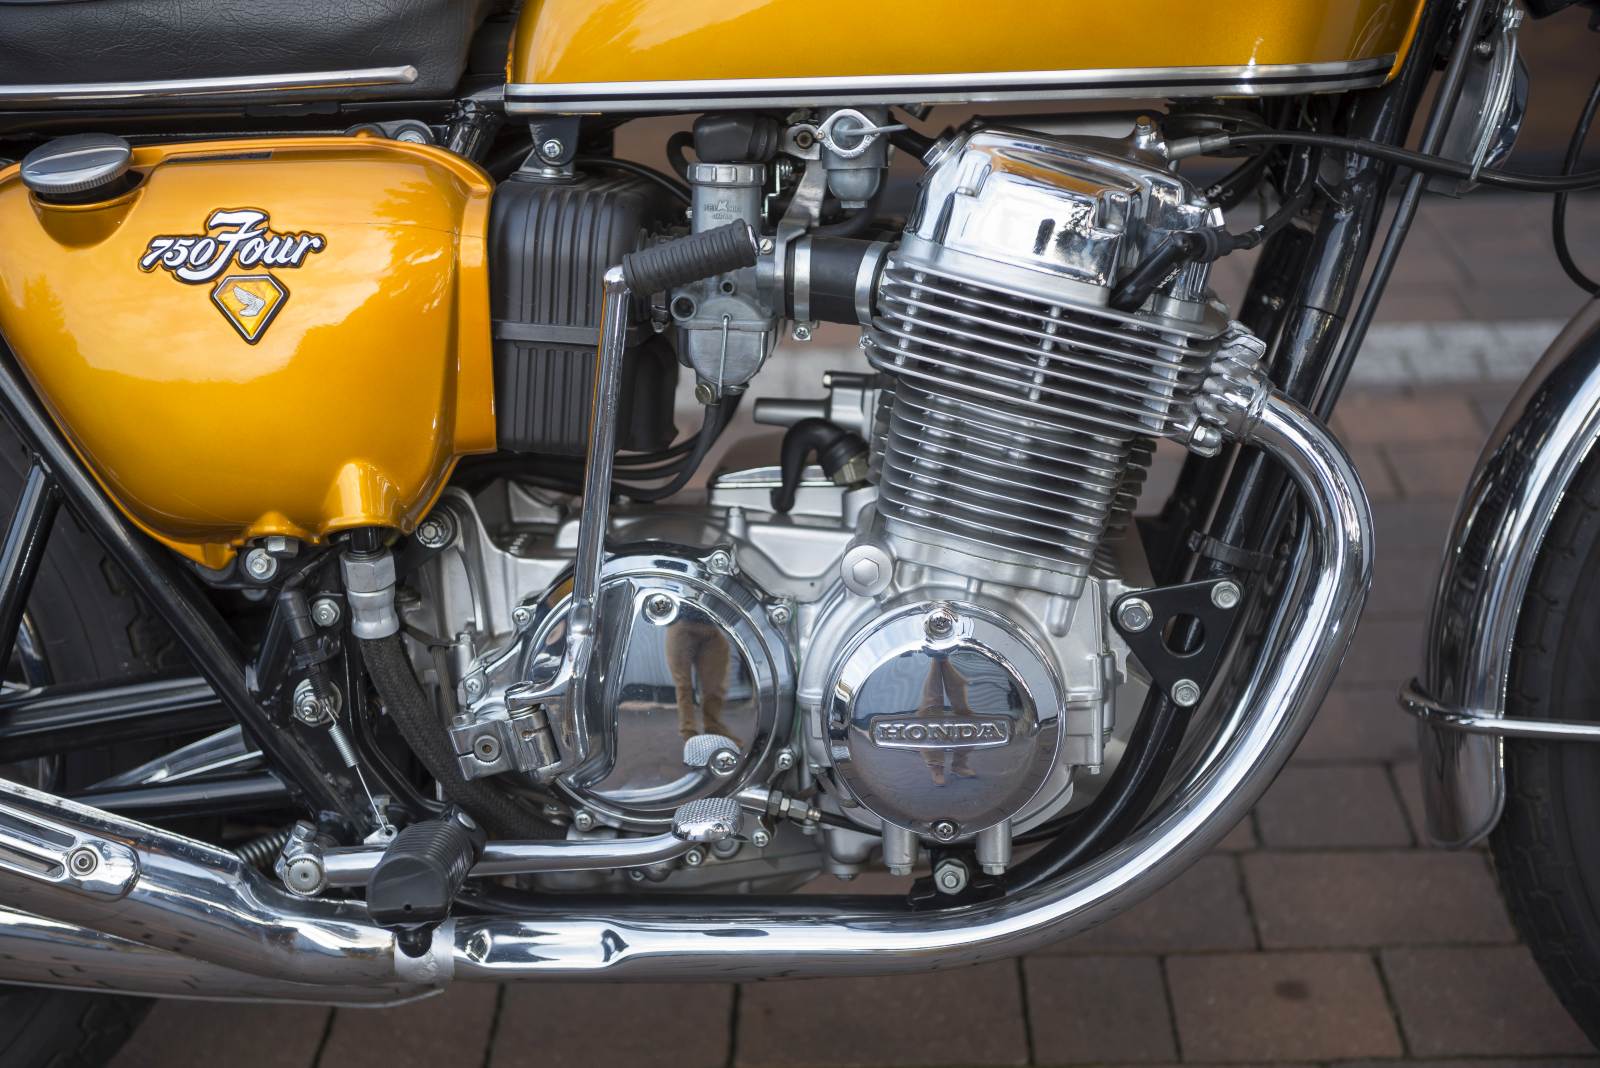 Cel? Zbudować najlepszy motocykl na świecie! Honda CB 750